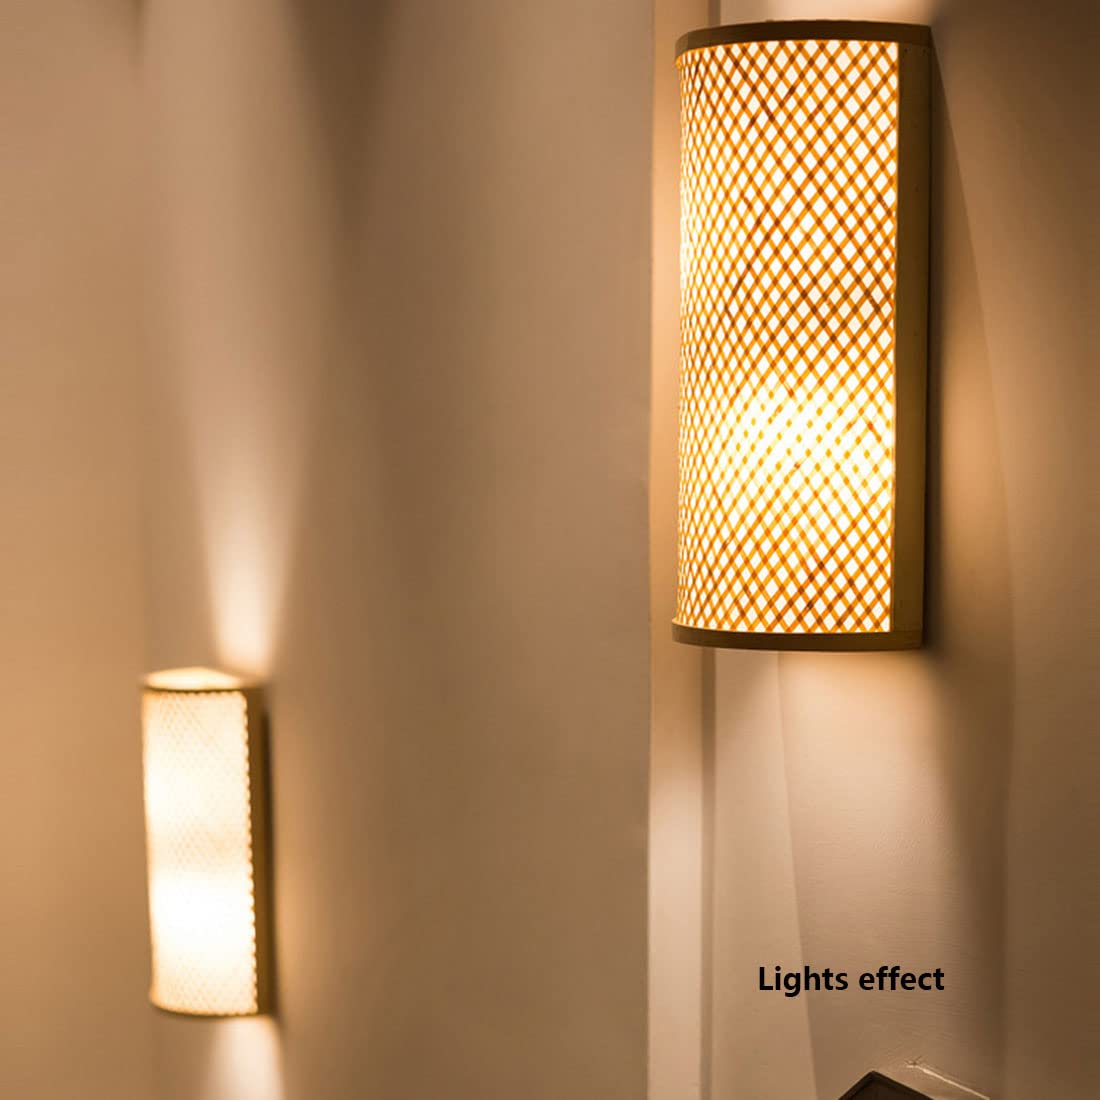 sisal wall light bamboo